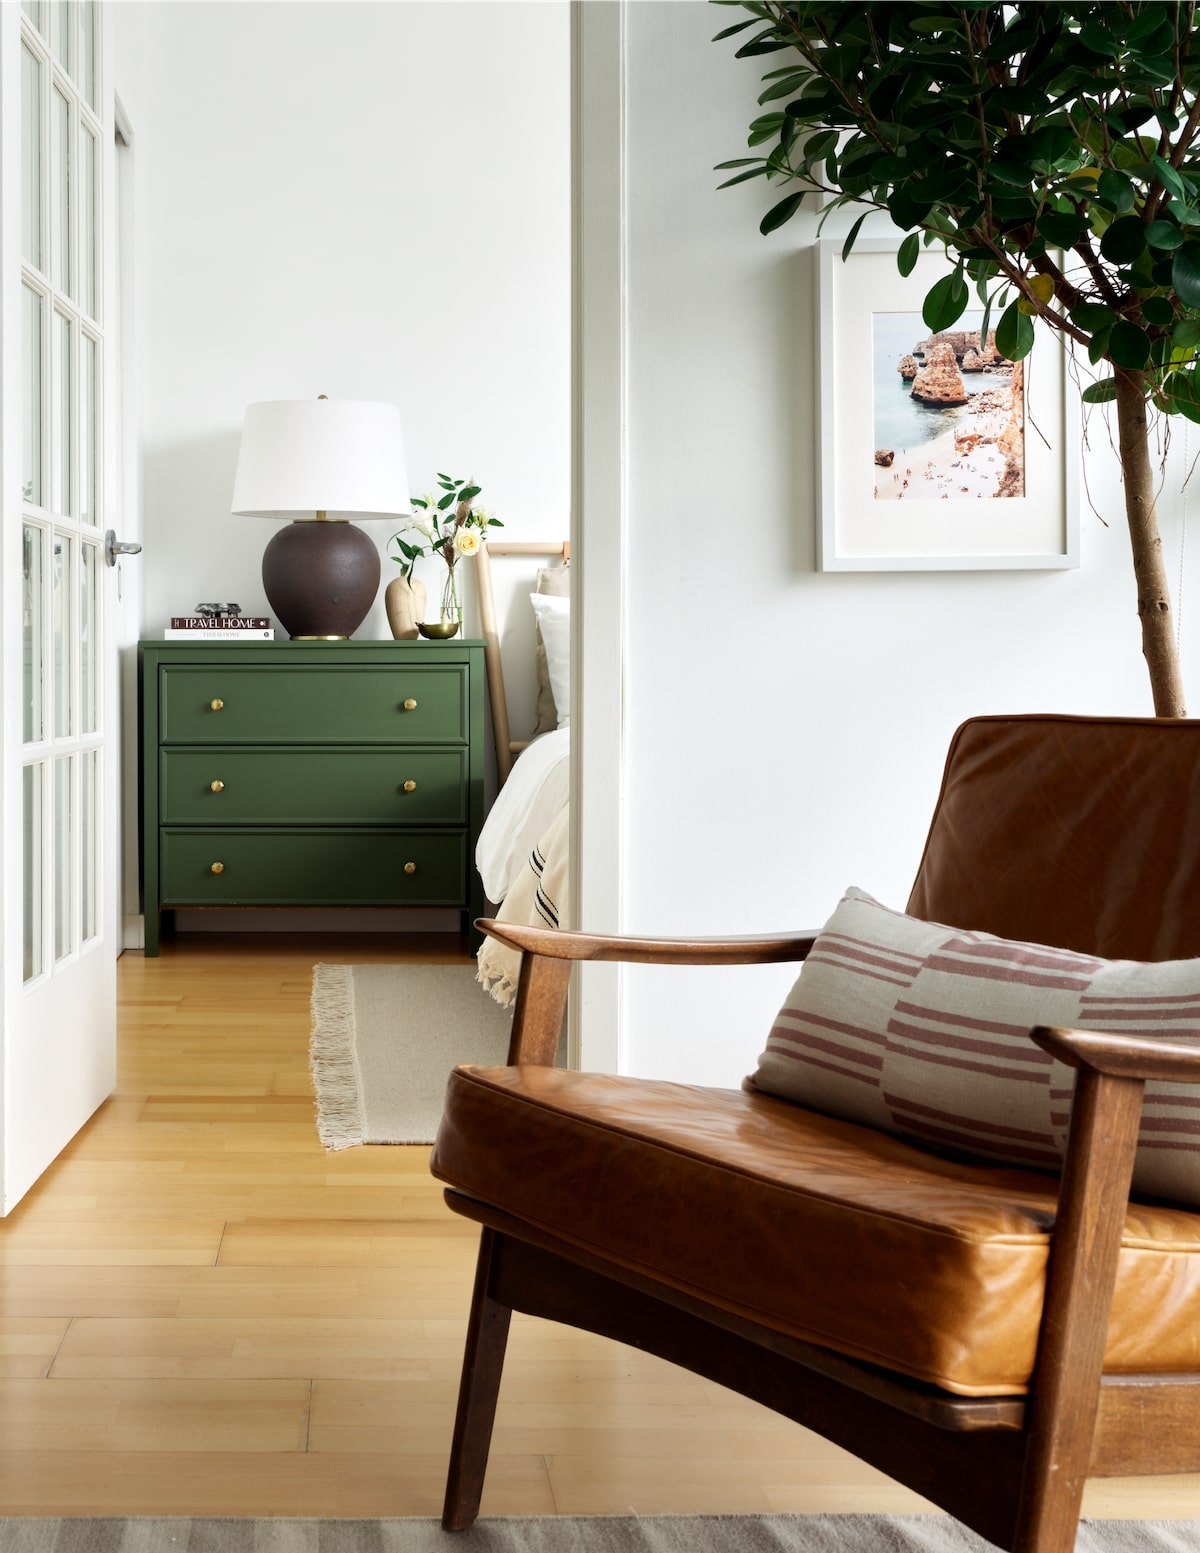 décoration vert laiton ocre bois scandinave salon chambre citronnier intérieur arbuste